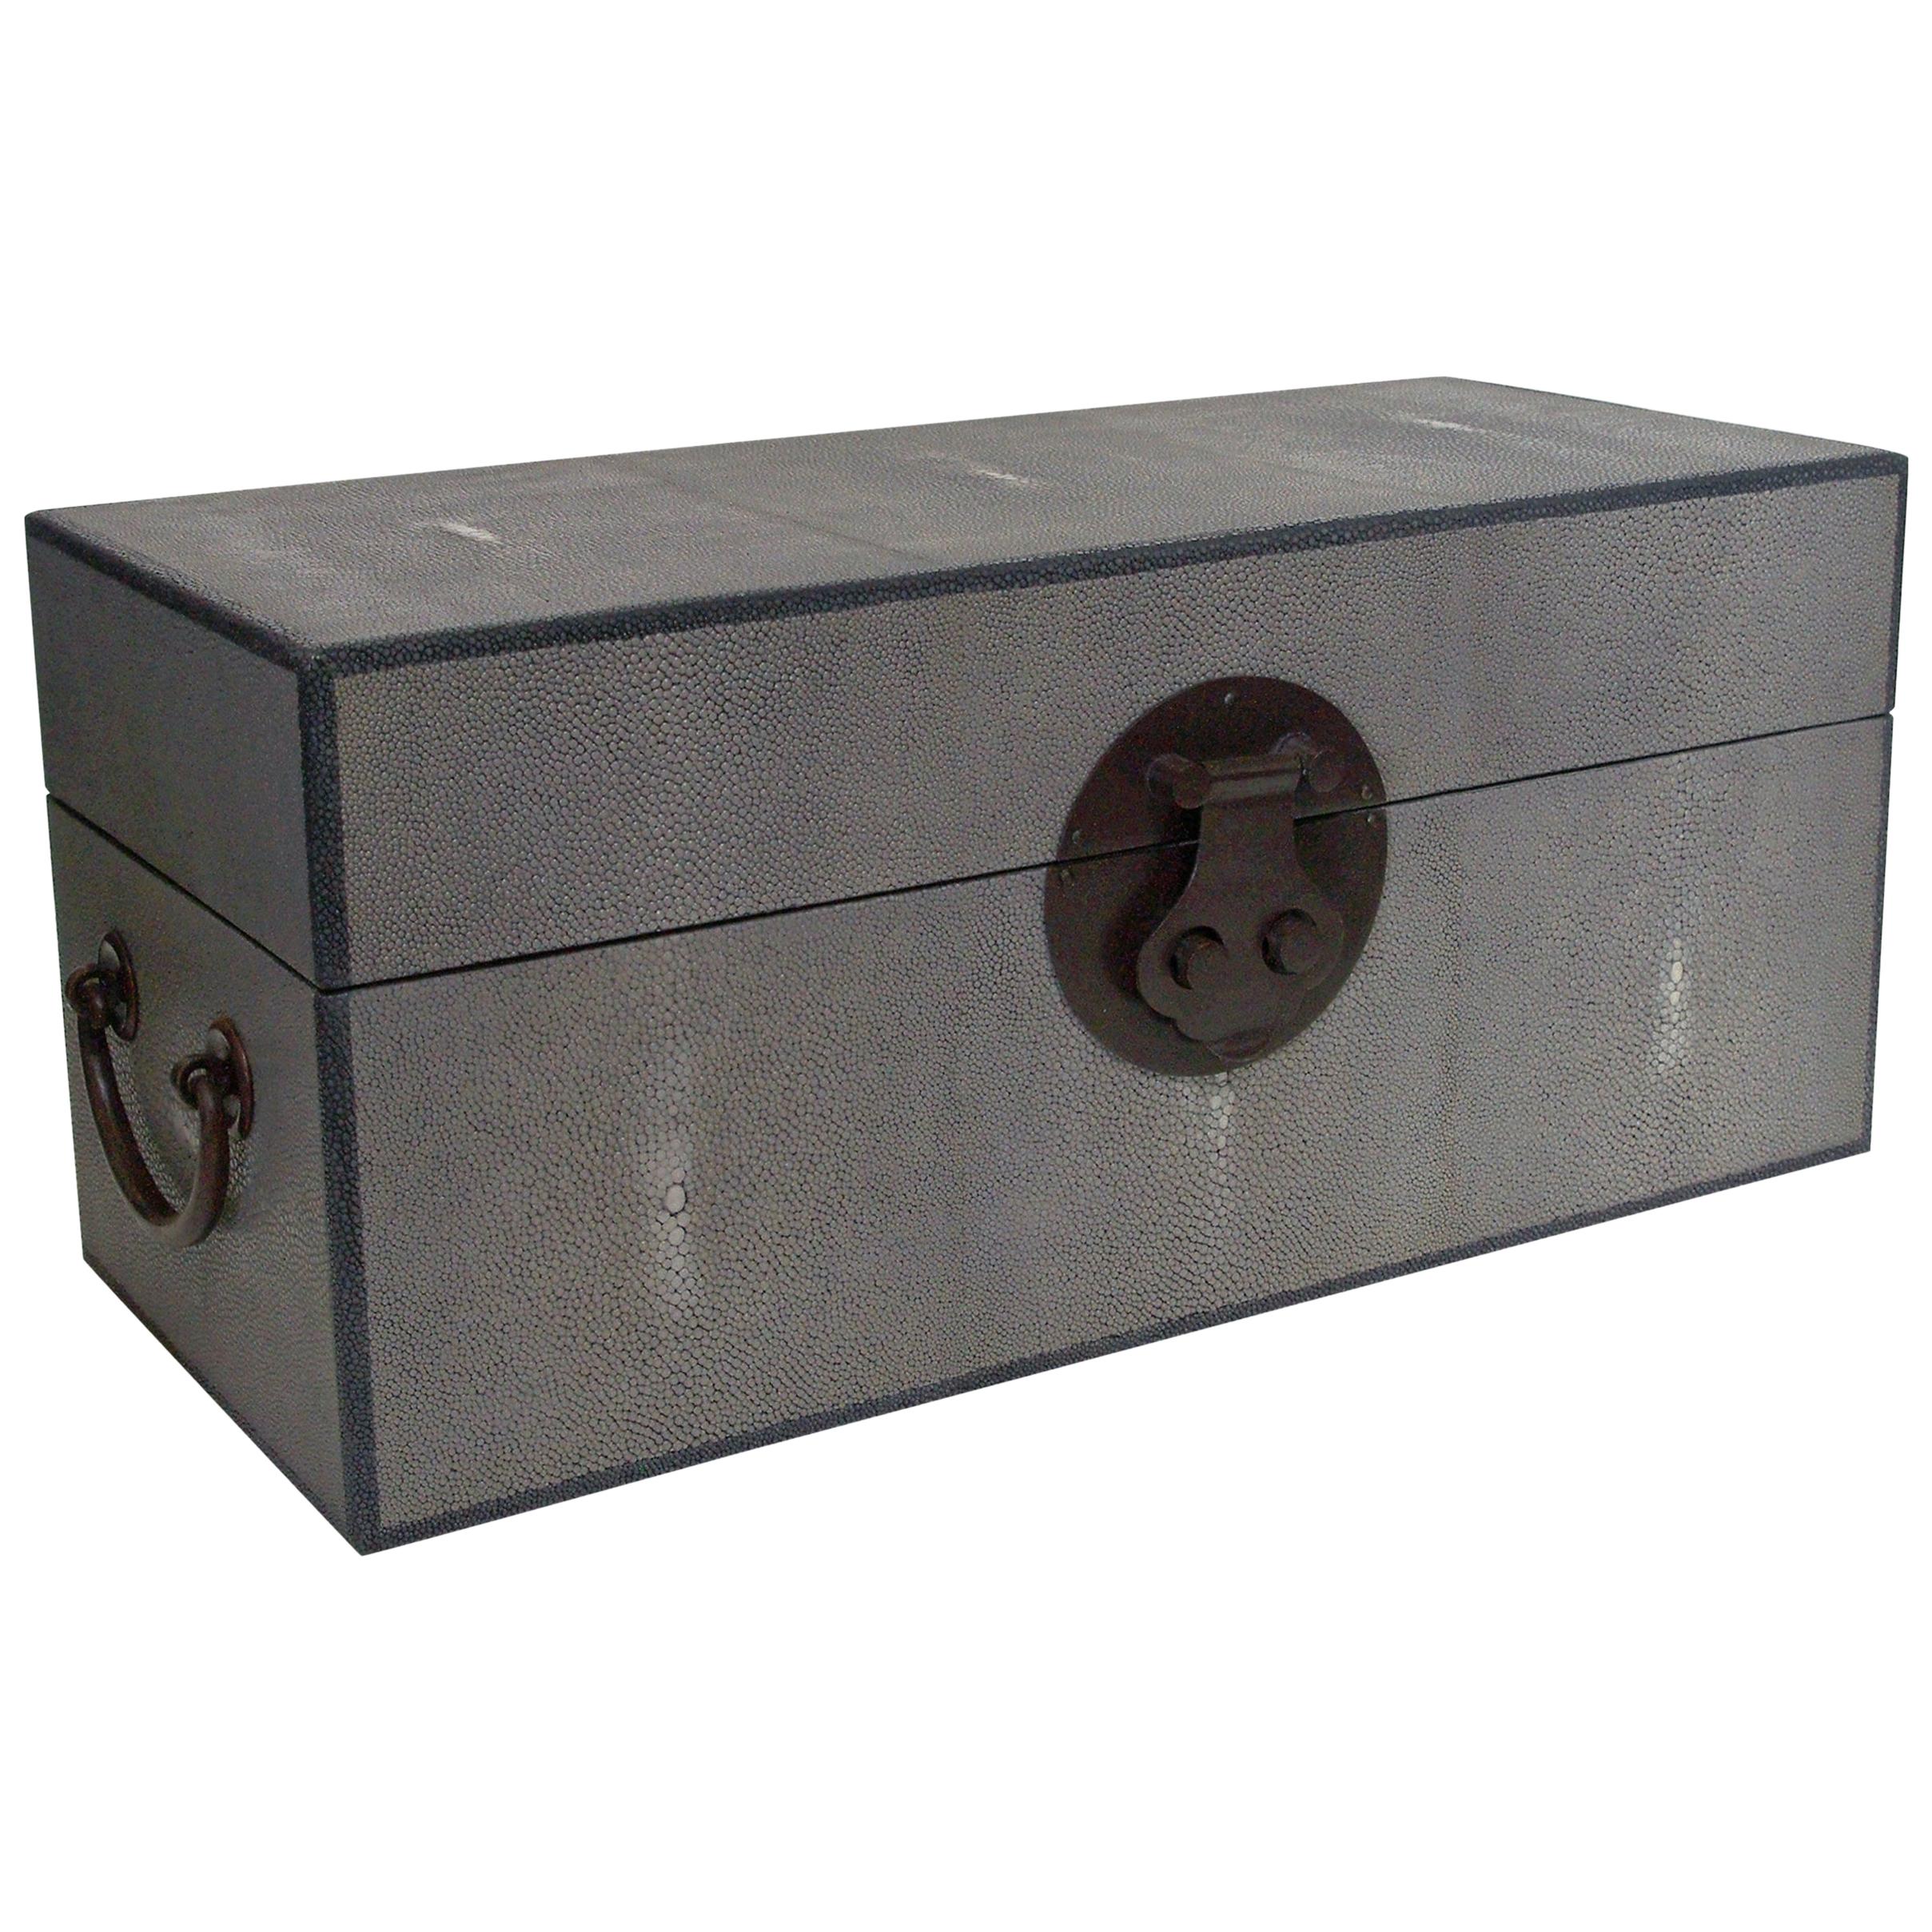 Gray Shagreen Wood Box FINAL CLEARANCE SALE